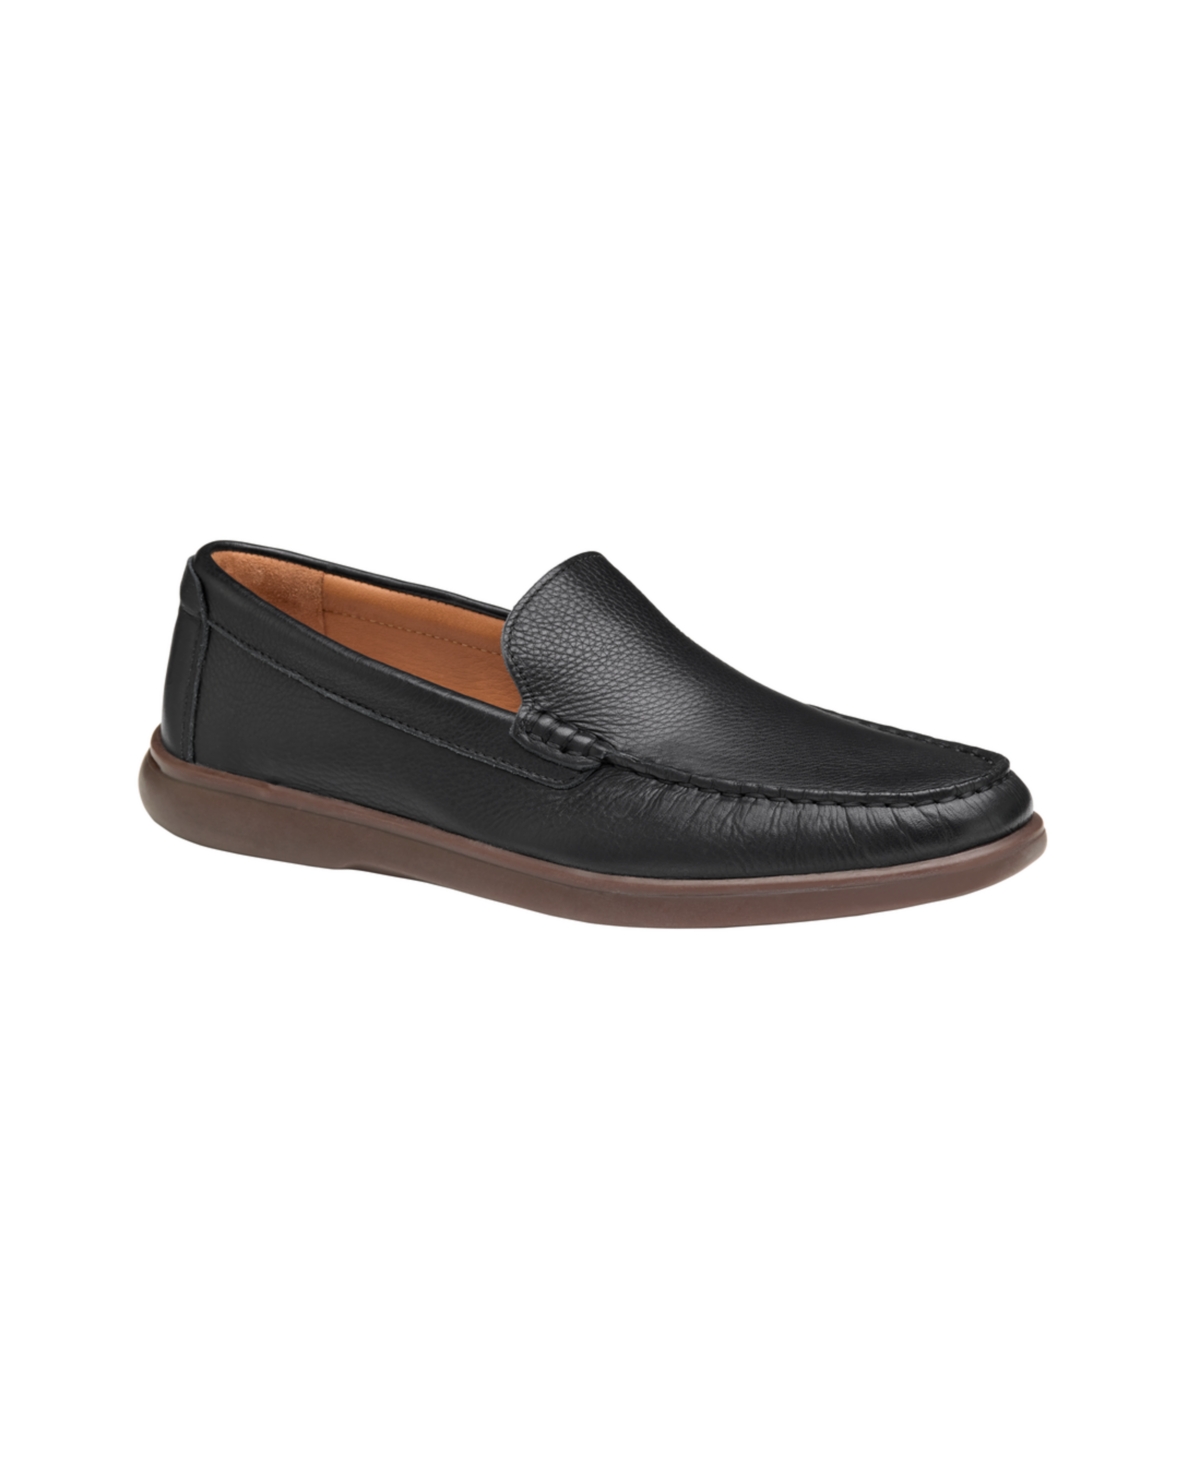 Johnston & Murphy Men's Brannon Venetian Slip-On Loafers Men's Shoes